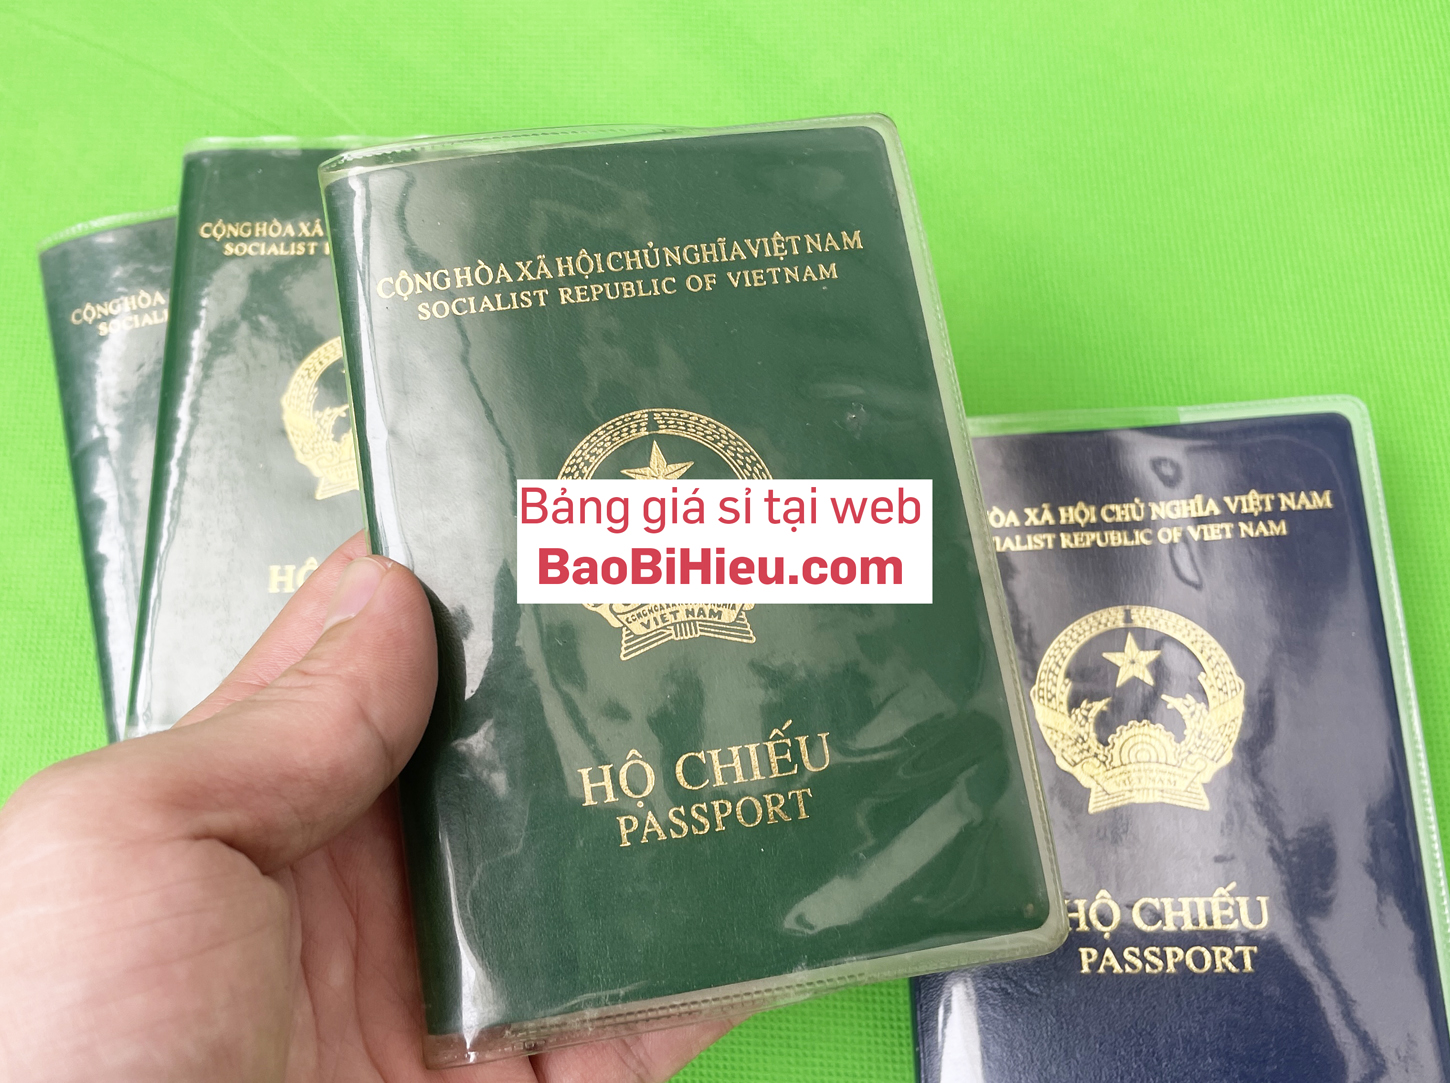 Vỏ bao hộ chiếu (passport) dẻo trong có khe đựng vé máy bay và các thoại thẻ hiệu bamarau B132